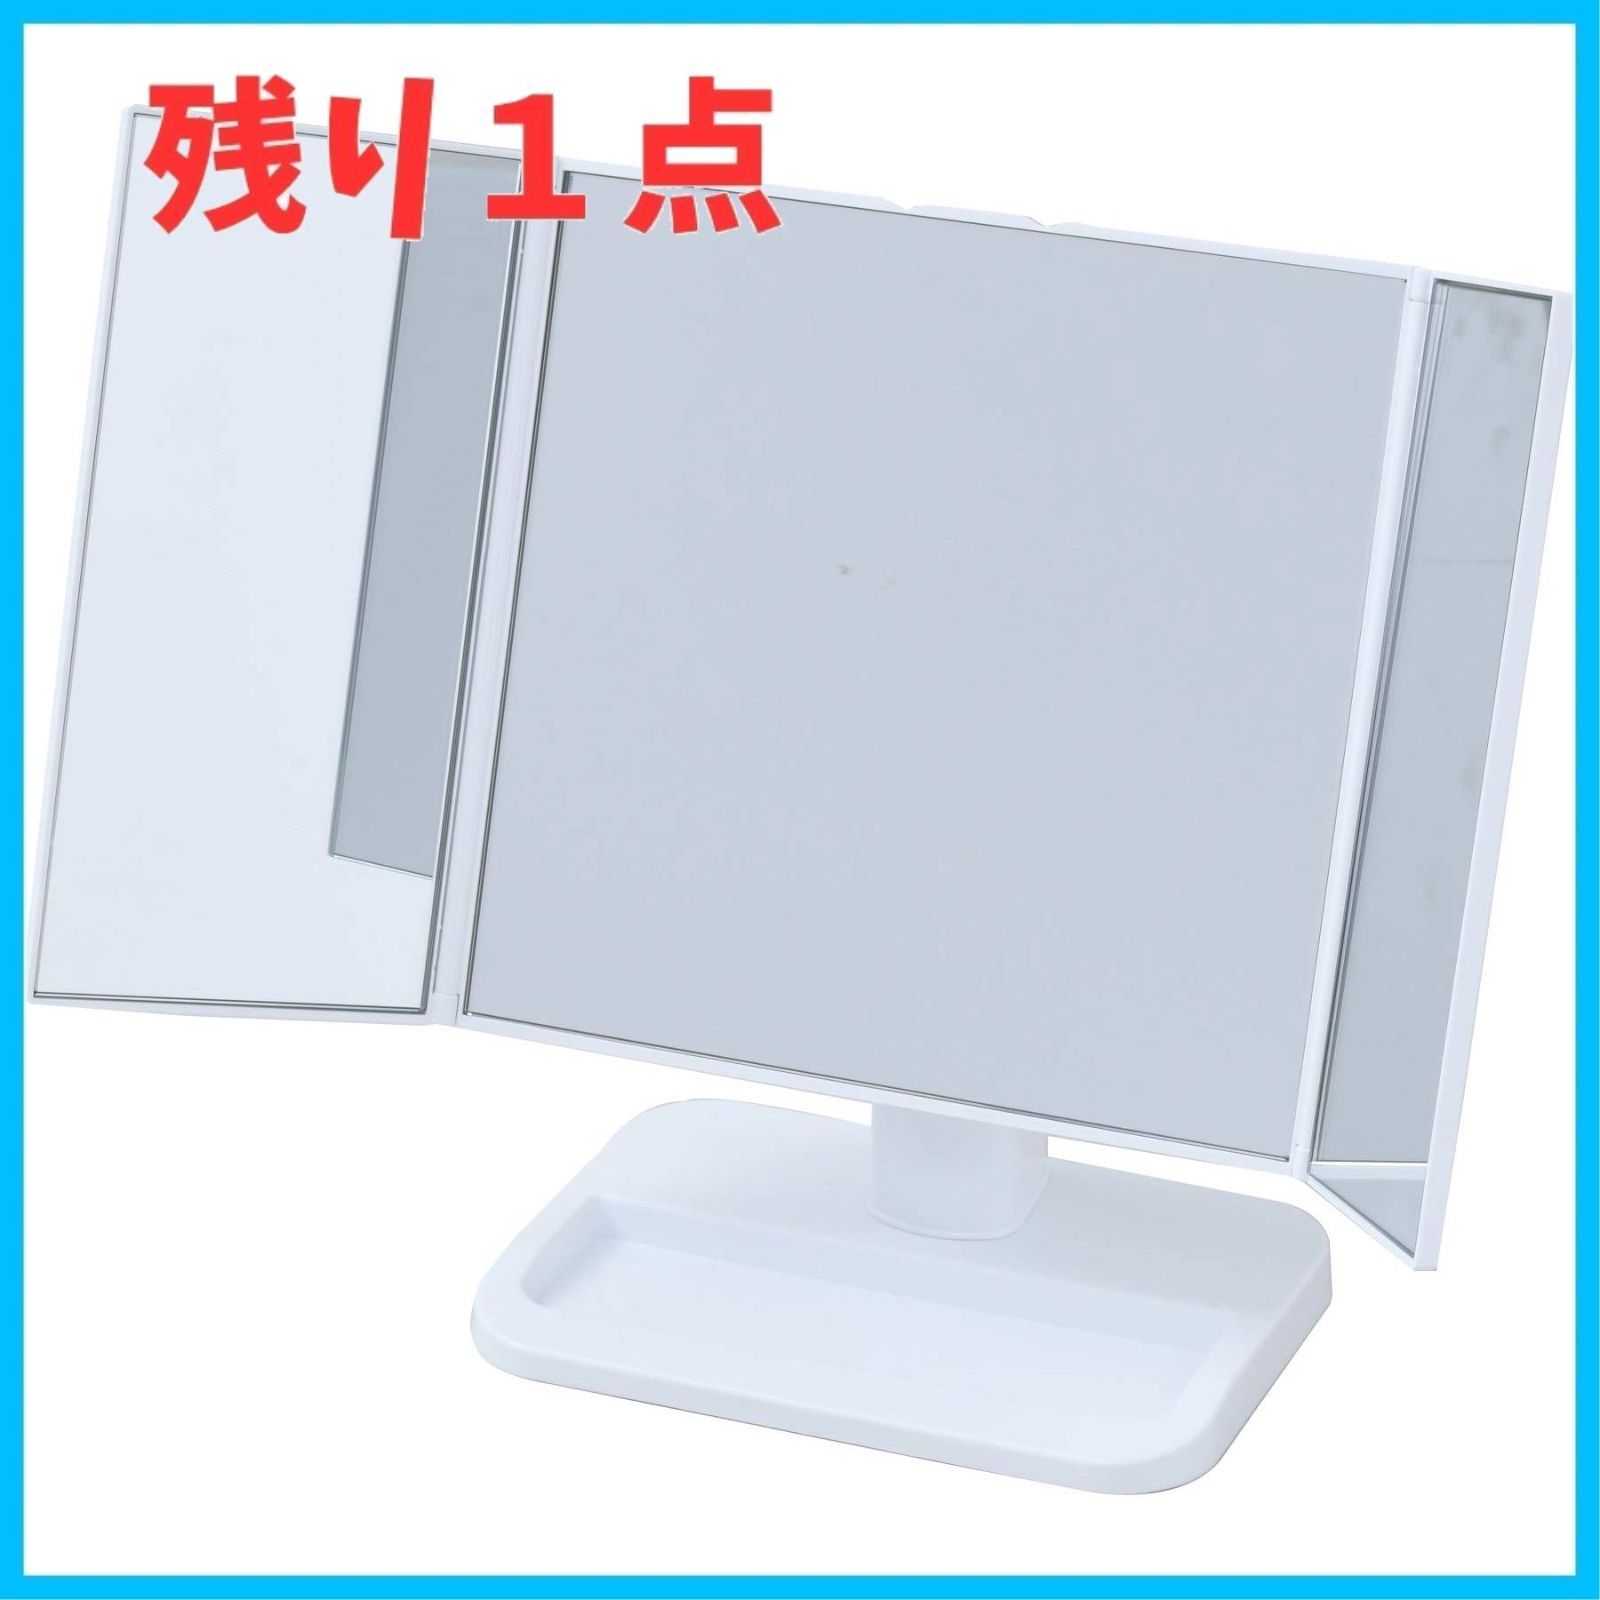 山善(YAMAZEN) 卓上三面鏡 ホワイト PM3-4326(WH)